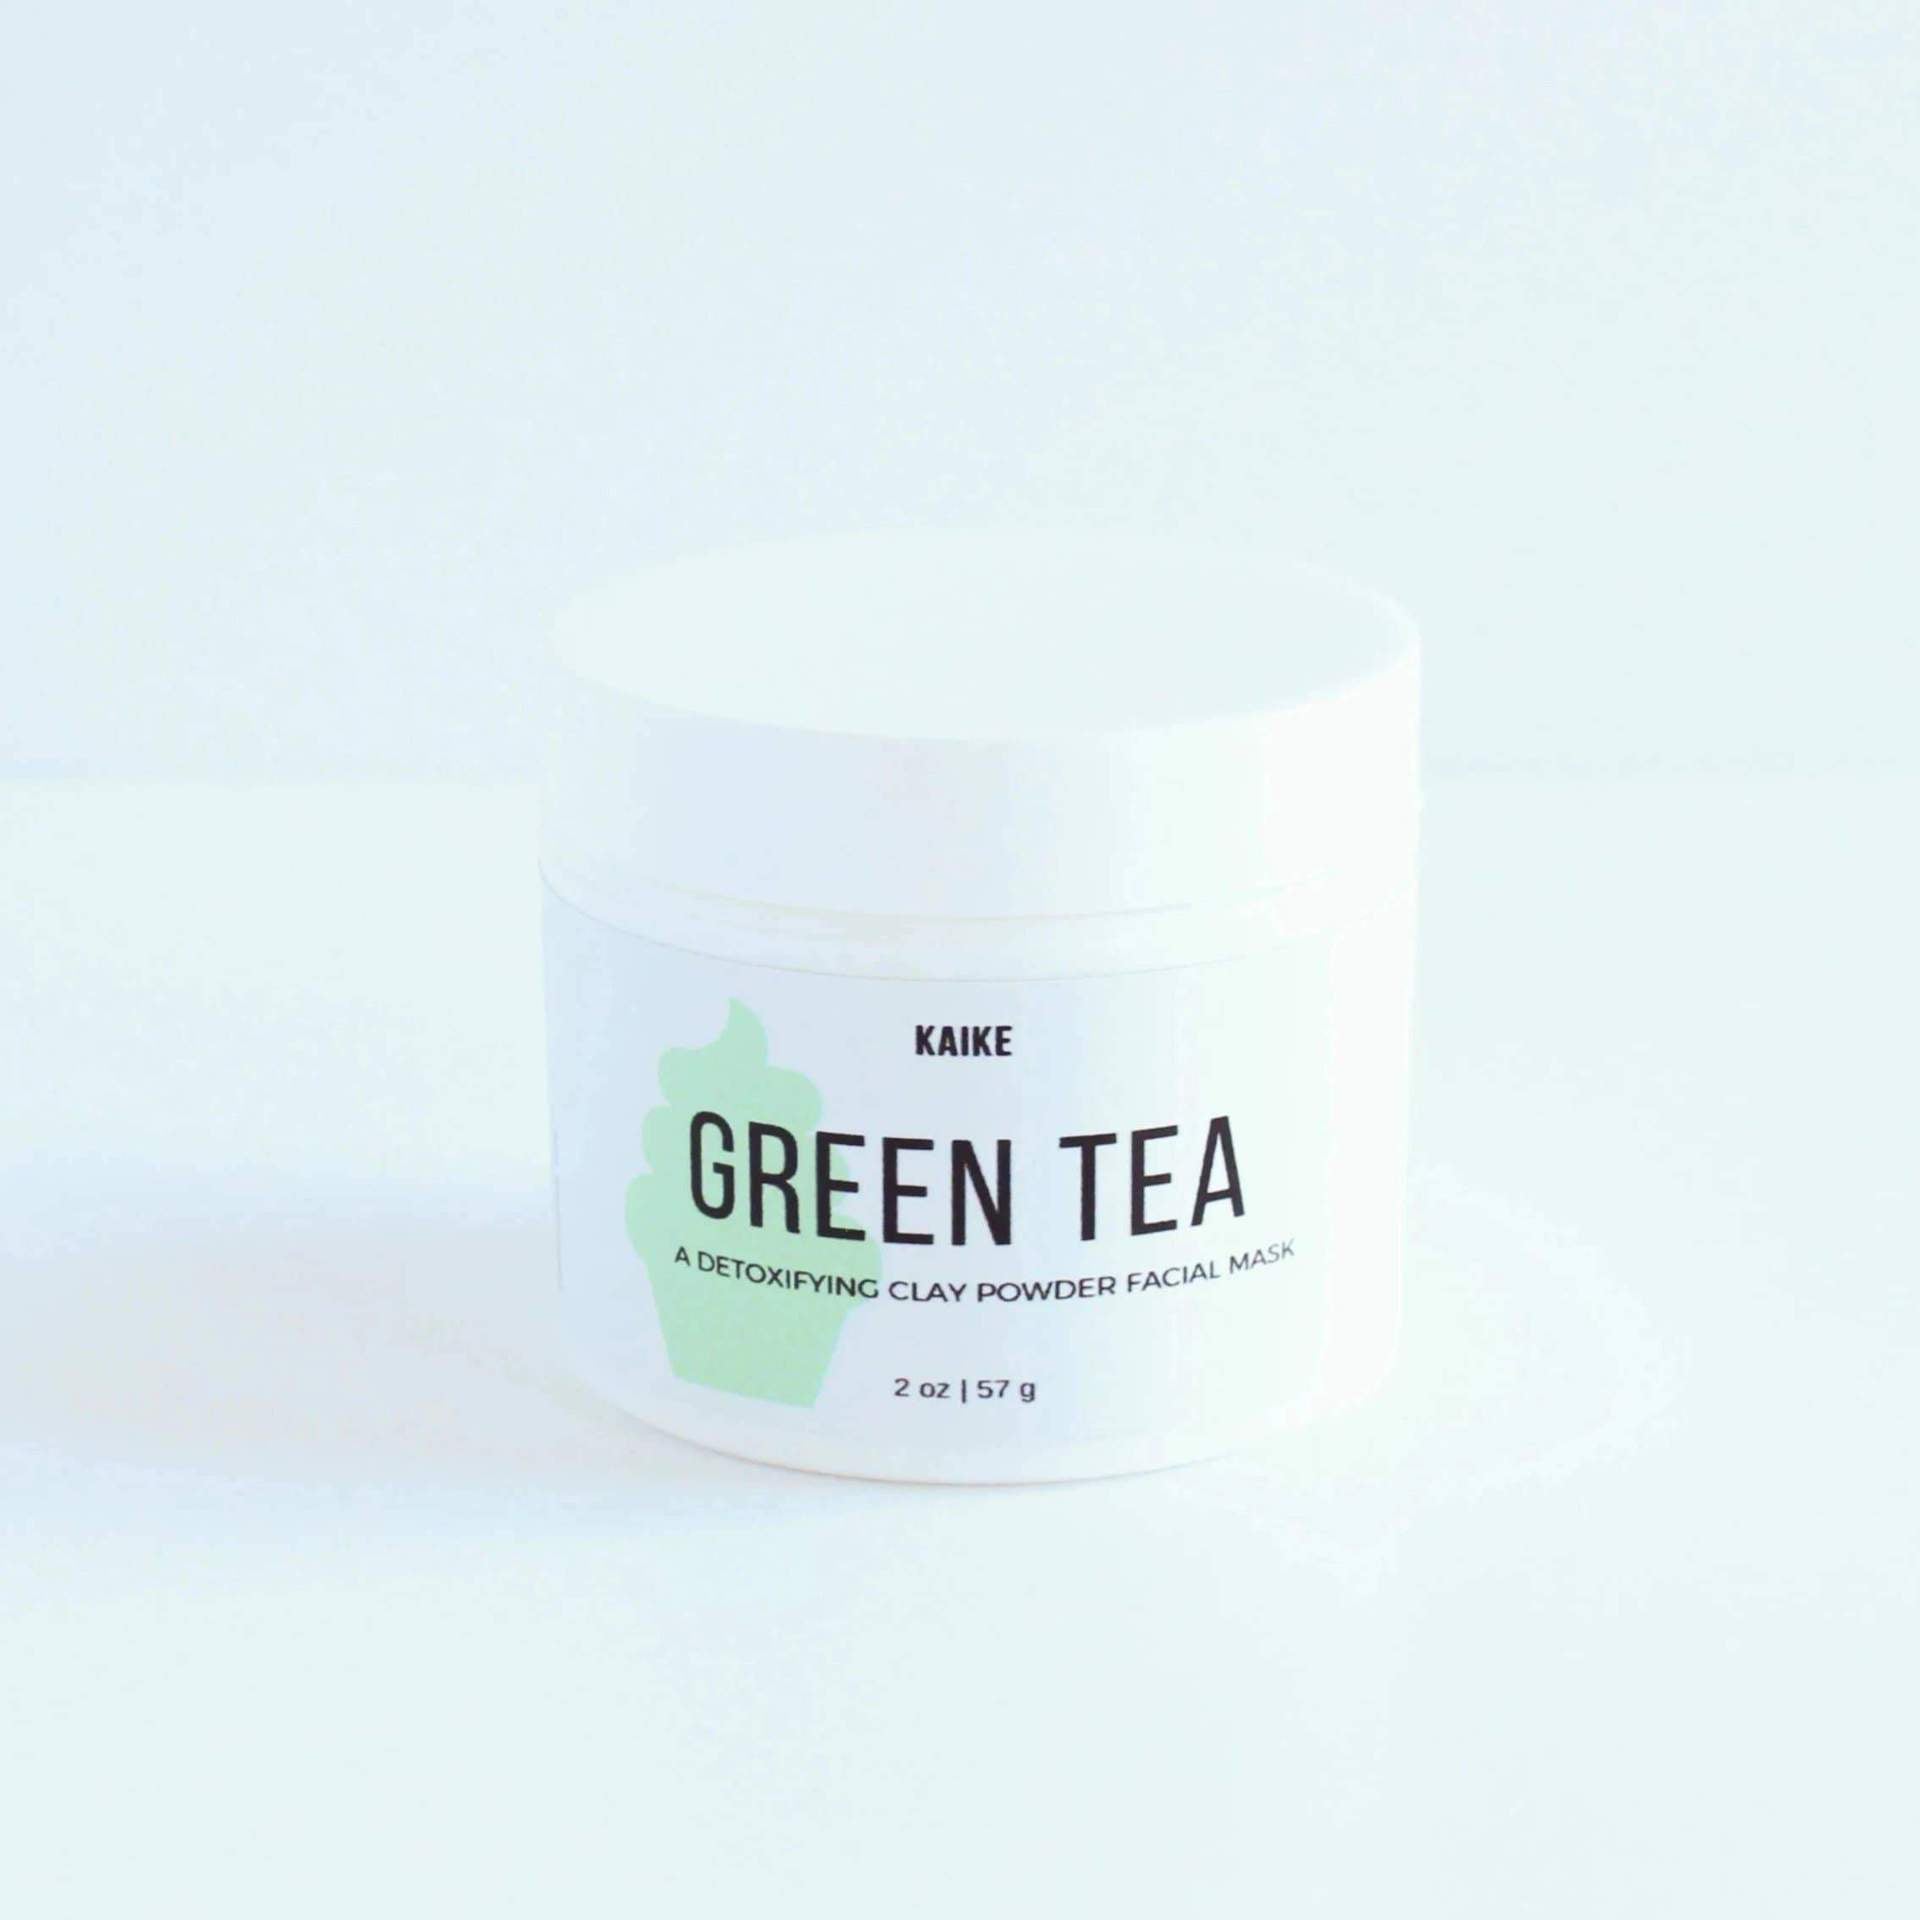 Kaike Green Tea detoxifying clay powder facial mask on cvtd beauty